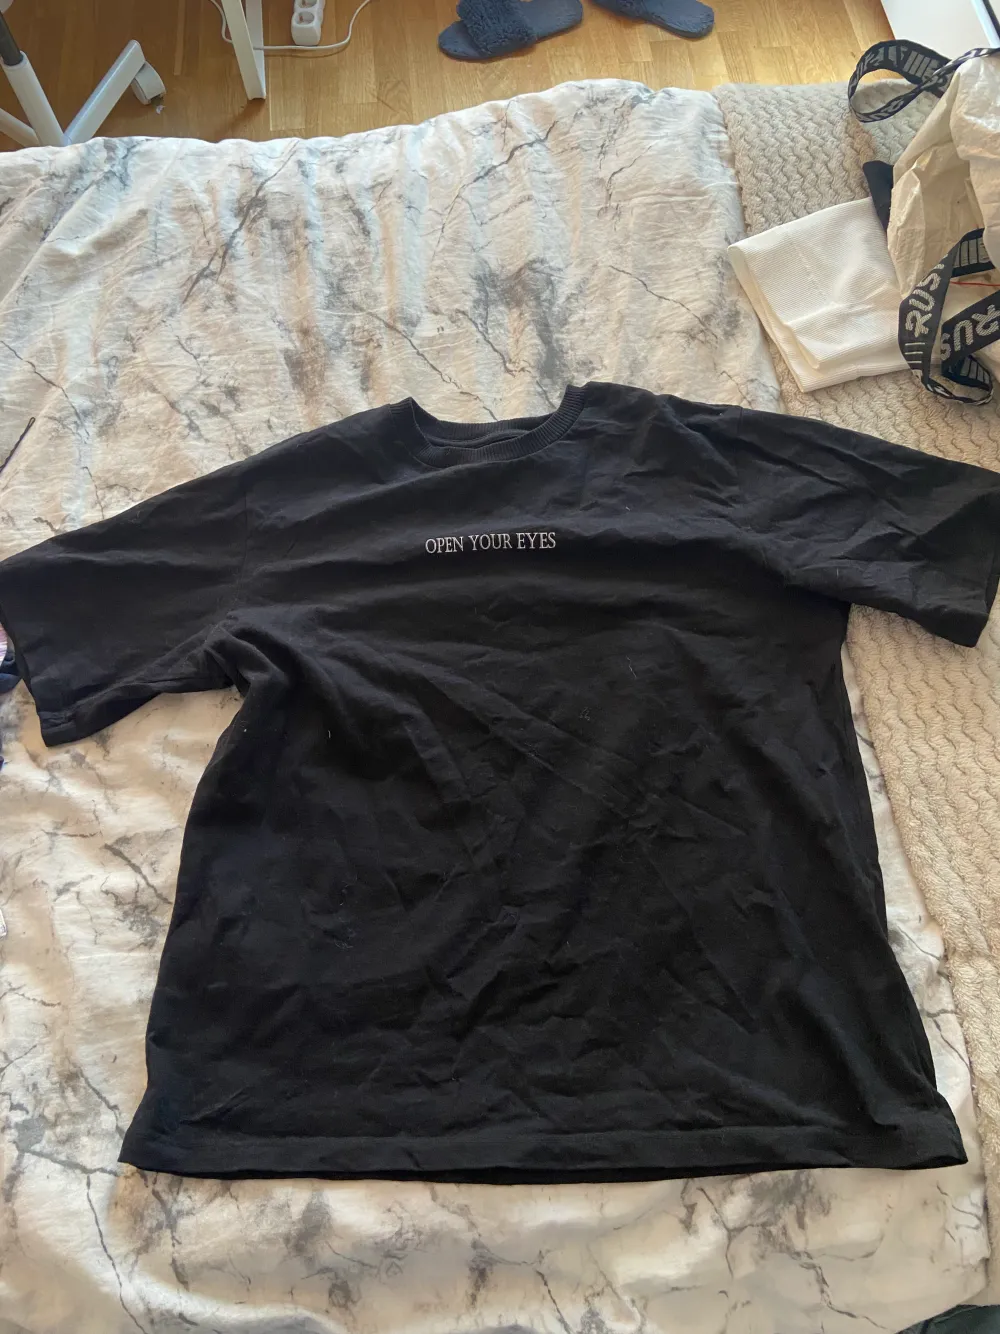 En svart t-shirt med tryck och text, kostar 30kr+20krfrakt . T-shirts.